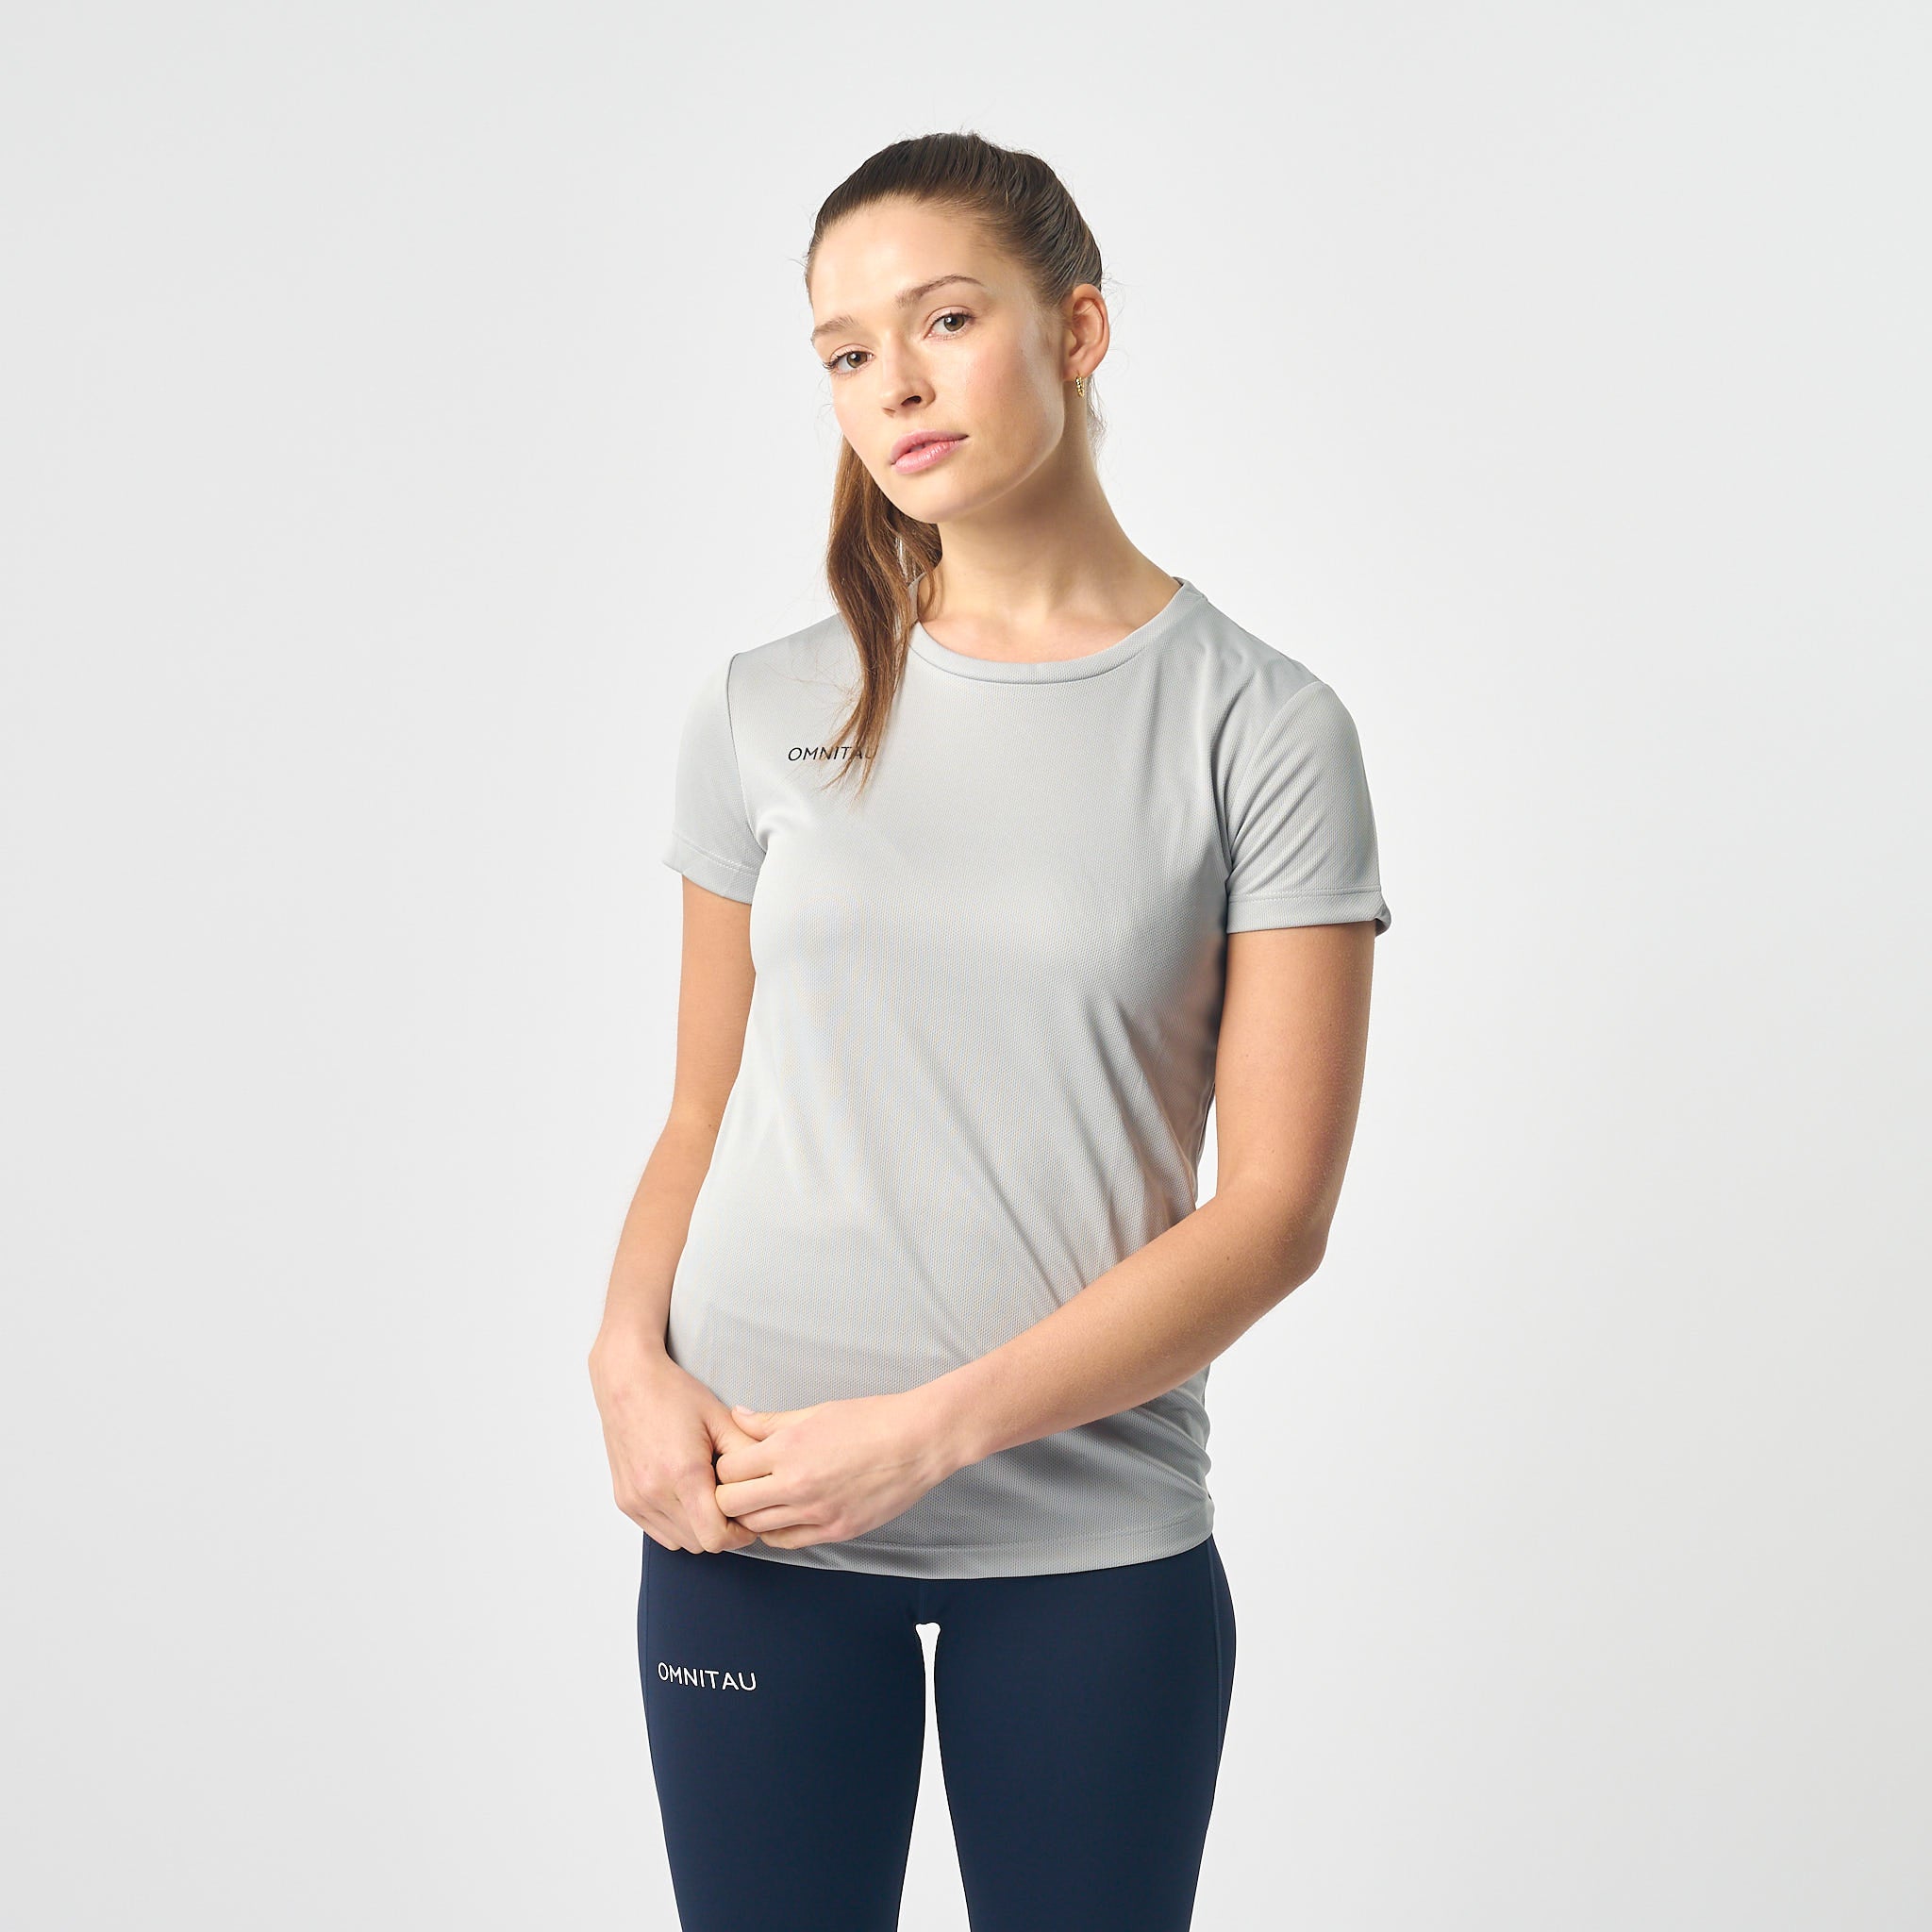 Omnitau Women's Team Sports Breathable Technical T-Shirt - Heather Grey